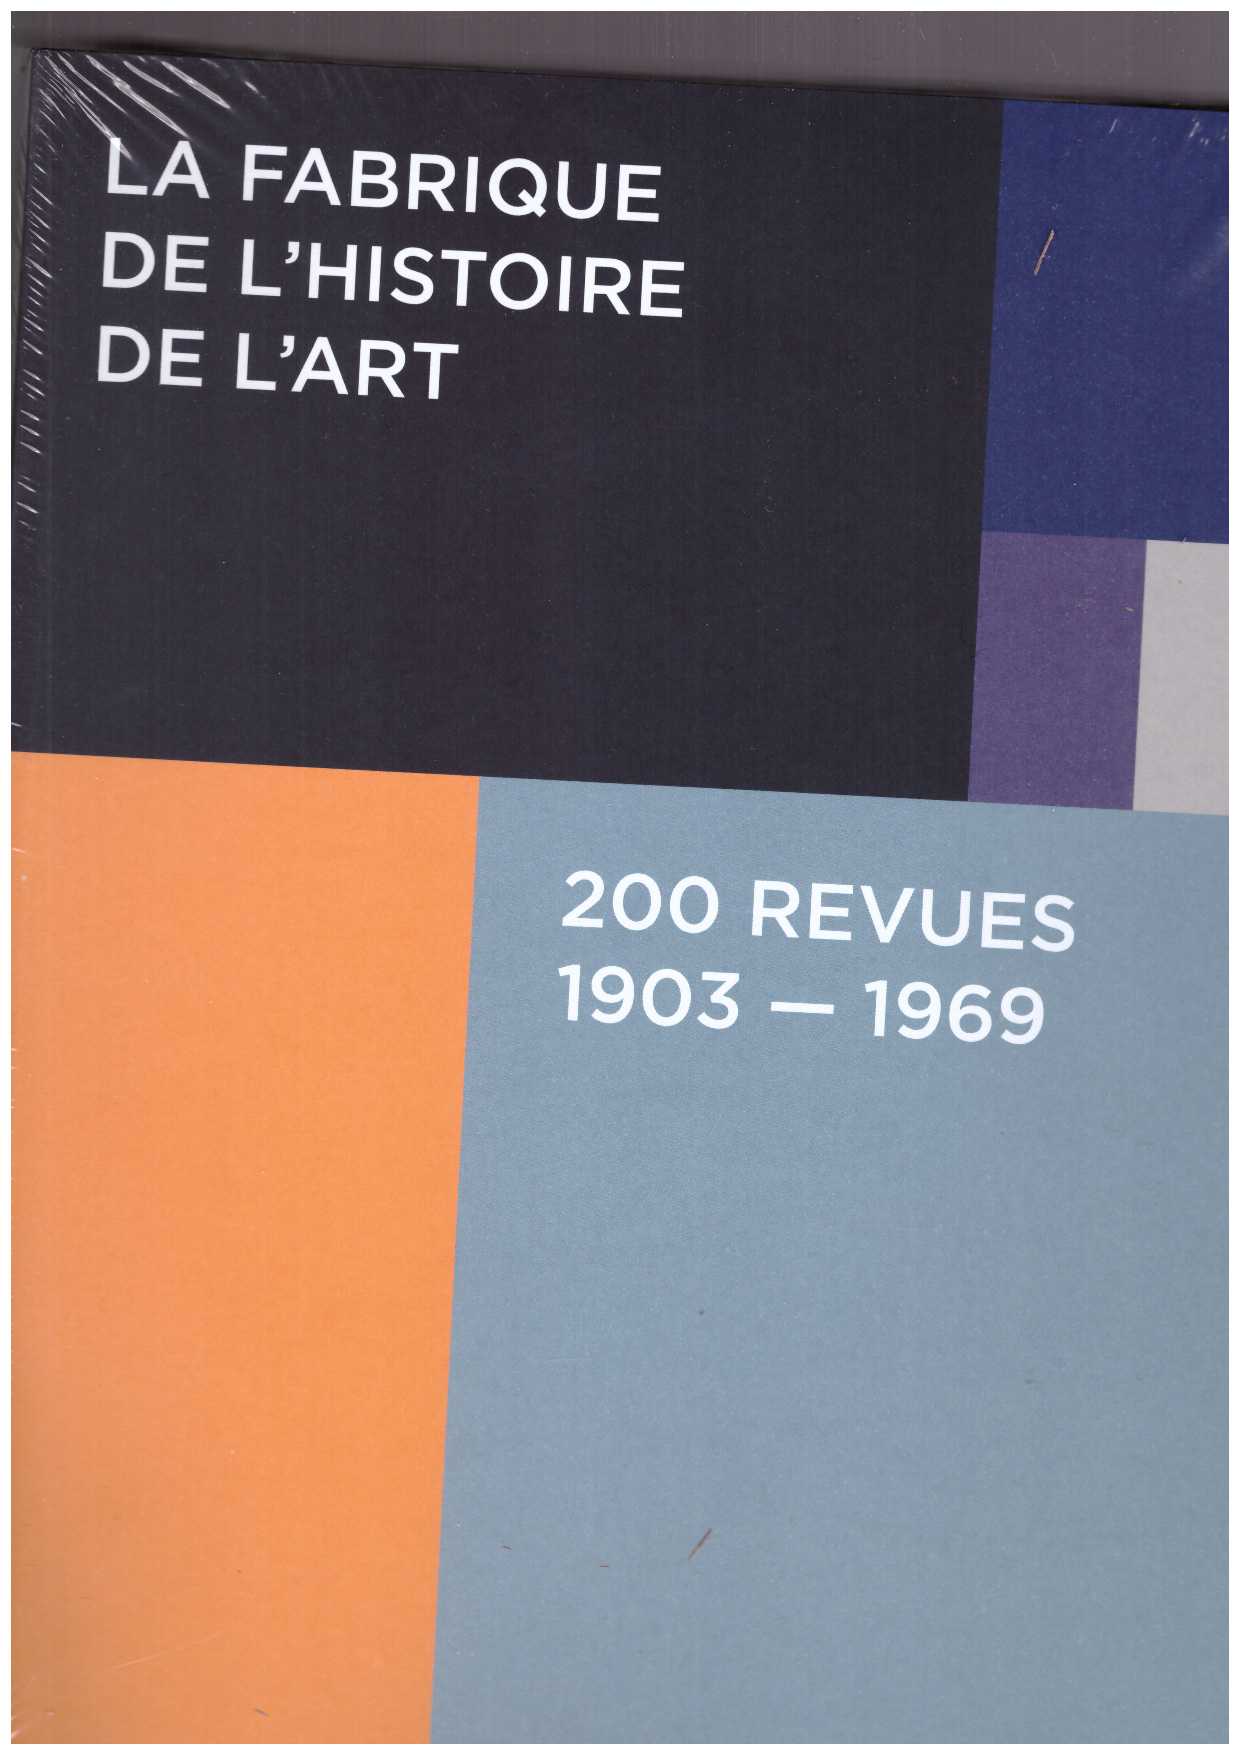 GHERGHESCU, Mica; GUEYE-PARMENTIER; RIVOIRE, Stéphanie; SCHULMANN, Didier (eds.) - La fabrique de l’histoire de l’art. 200 revues, 1903–1969